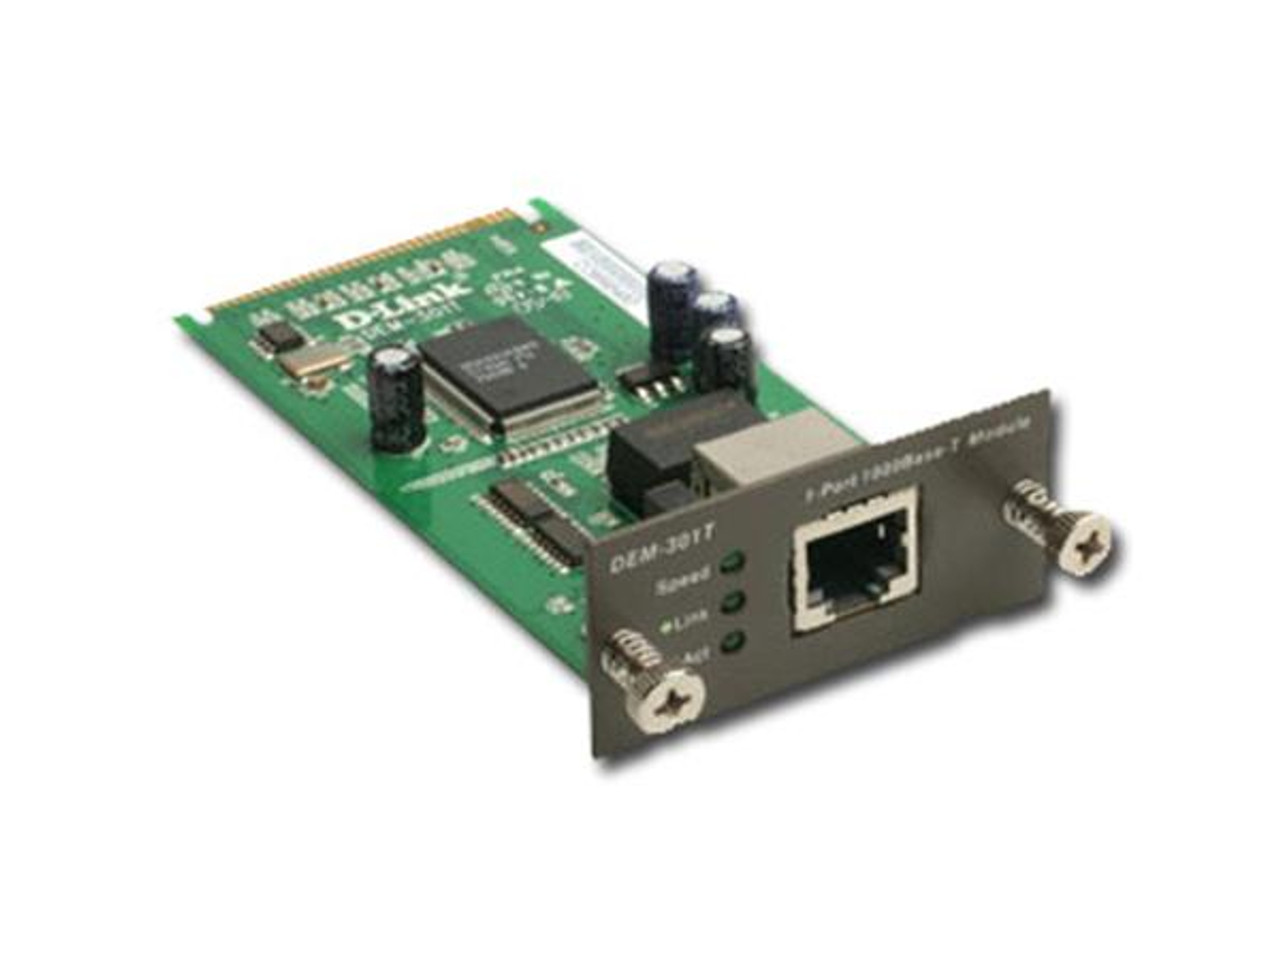 DEM-301T D-Link 1-Port 1000Base-T Gigabit Ethernet Copper Module 1 x 1000Base-T Expansion Module